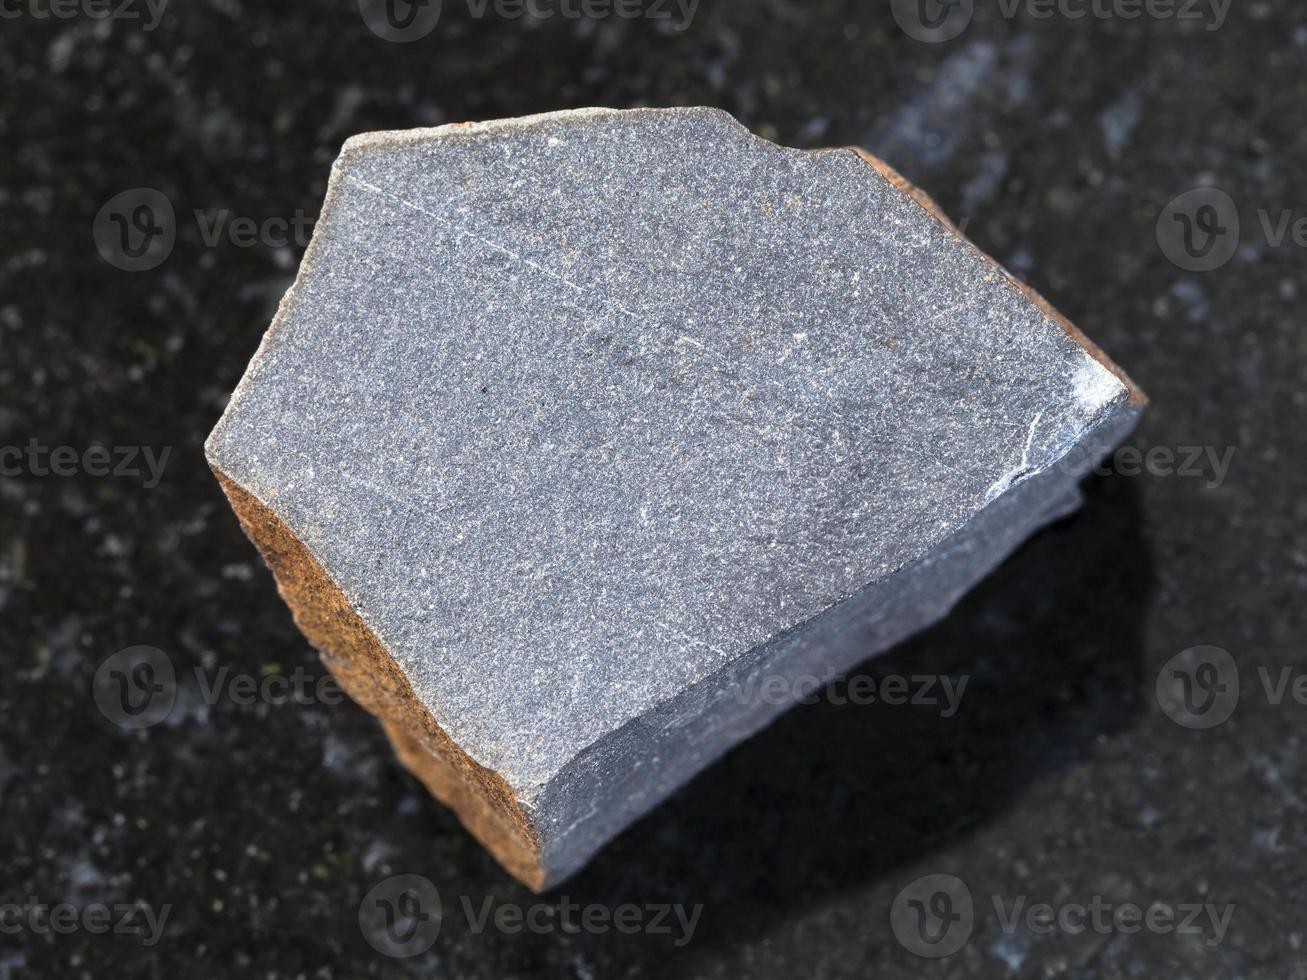 pedra áspera de taquilito de hialobasalto no escuro foto